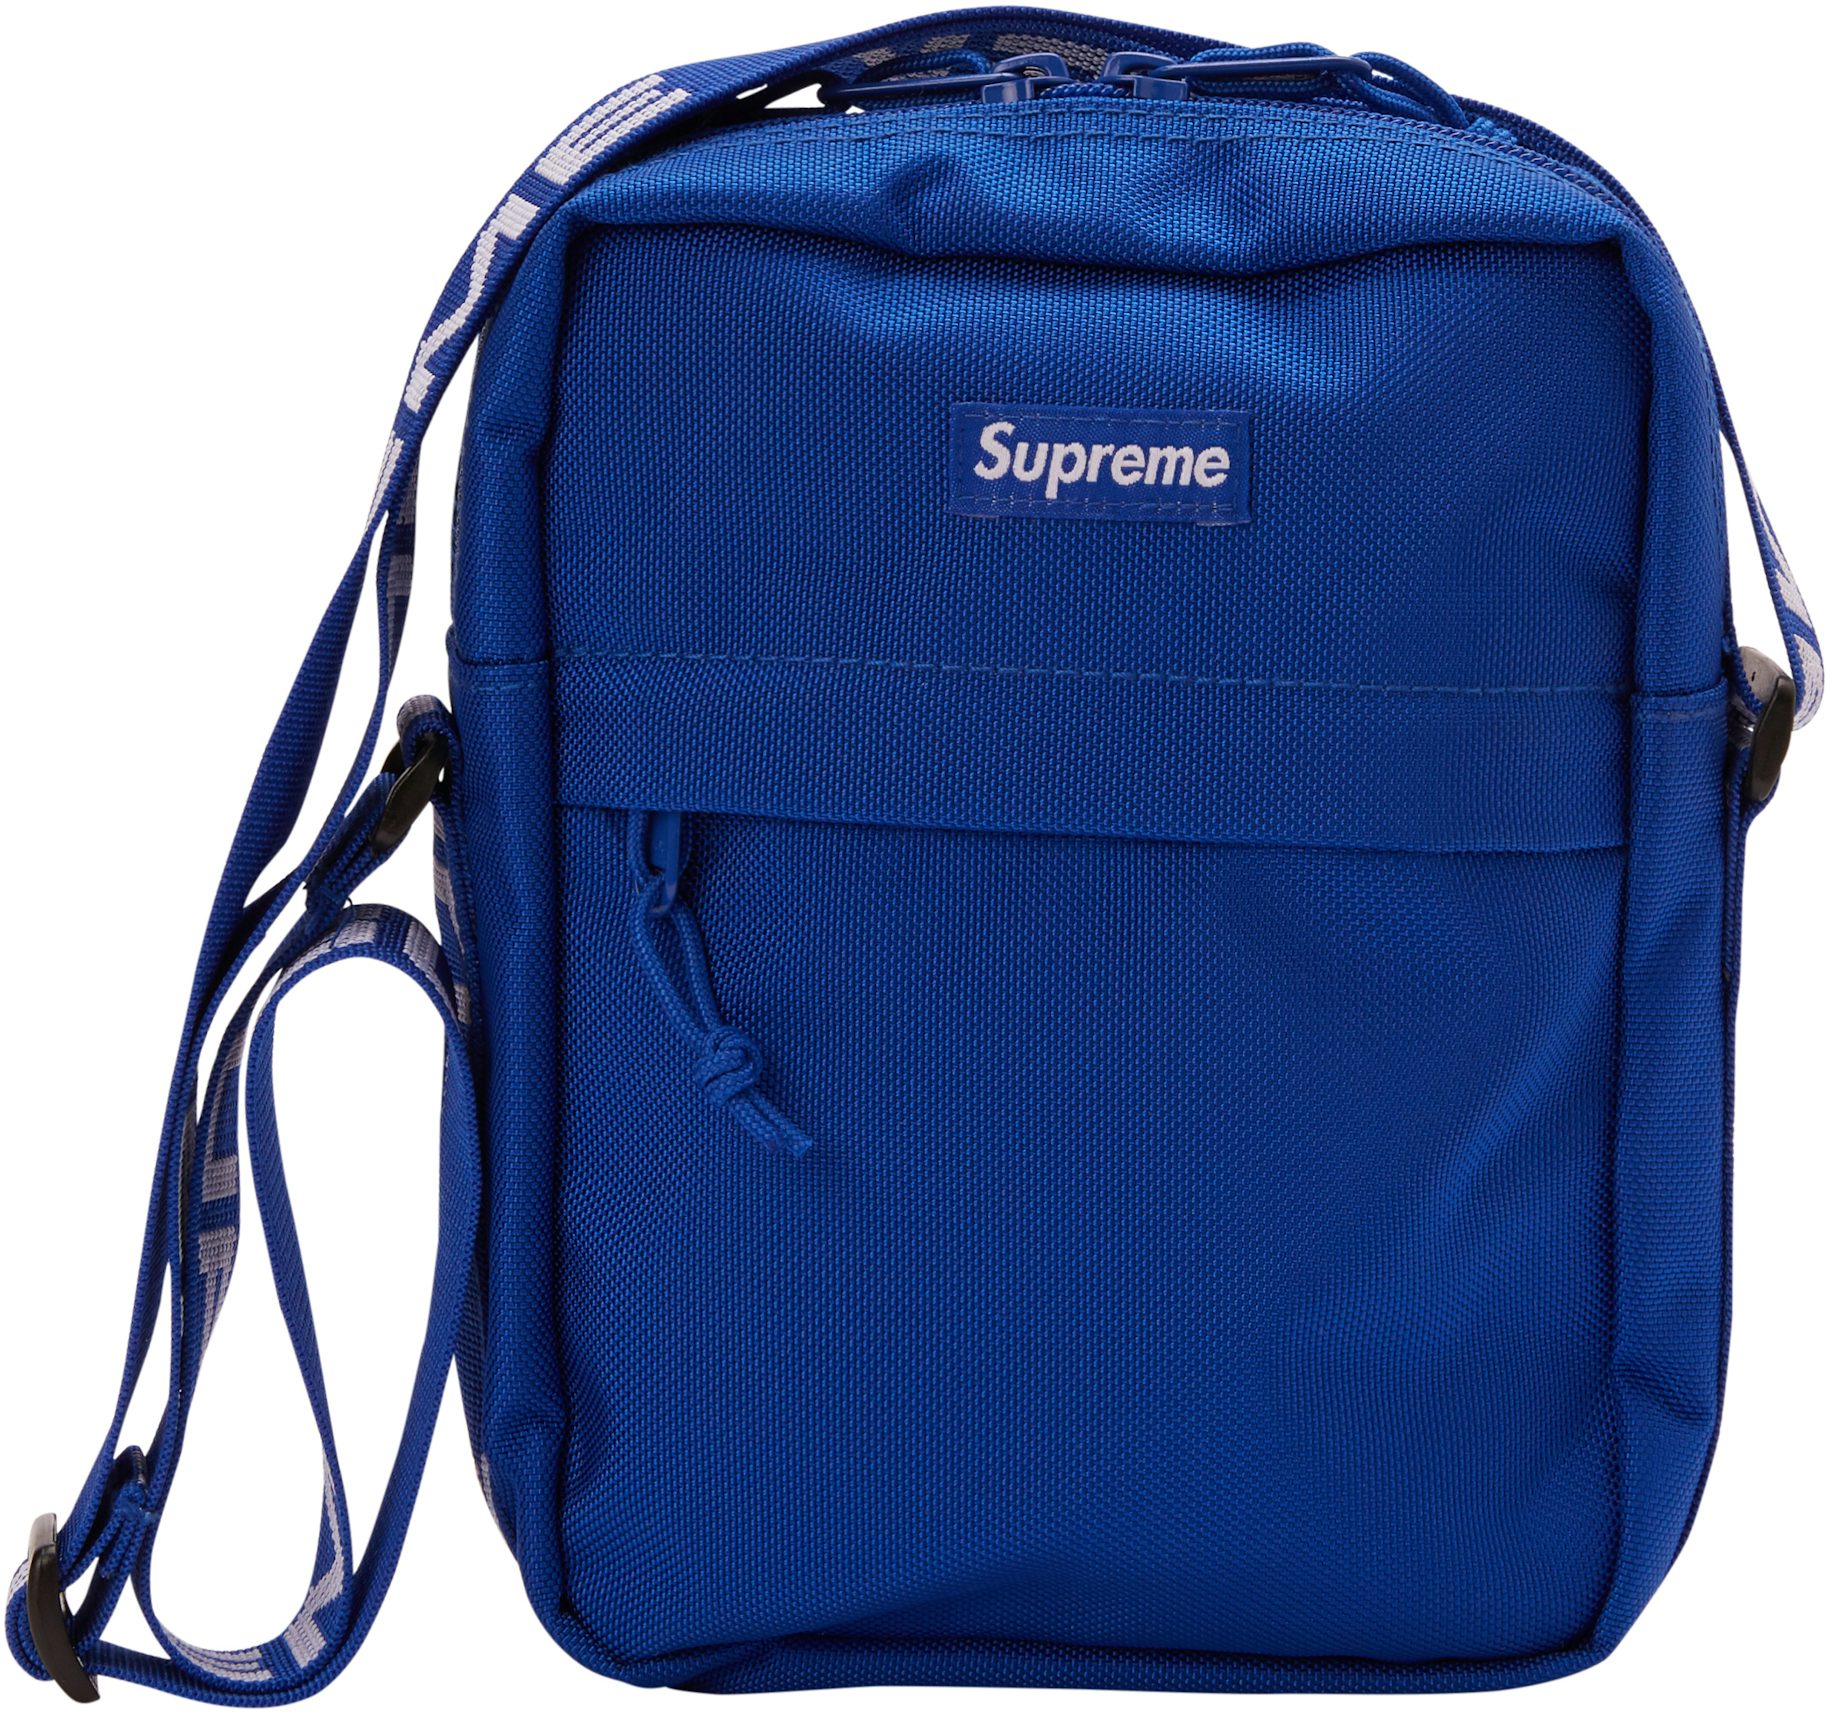 New Supreme Shoulder Bag SS18 Black Red Blue Unisex Ecuador